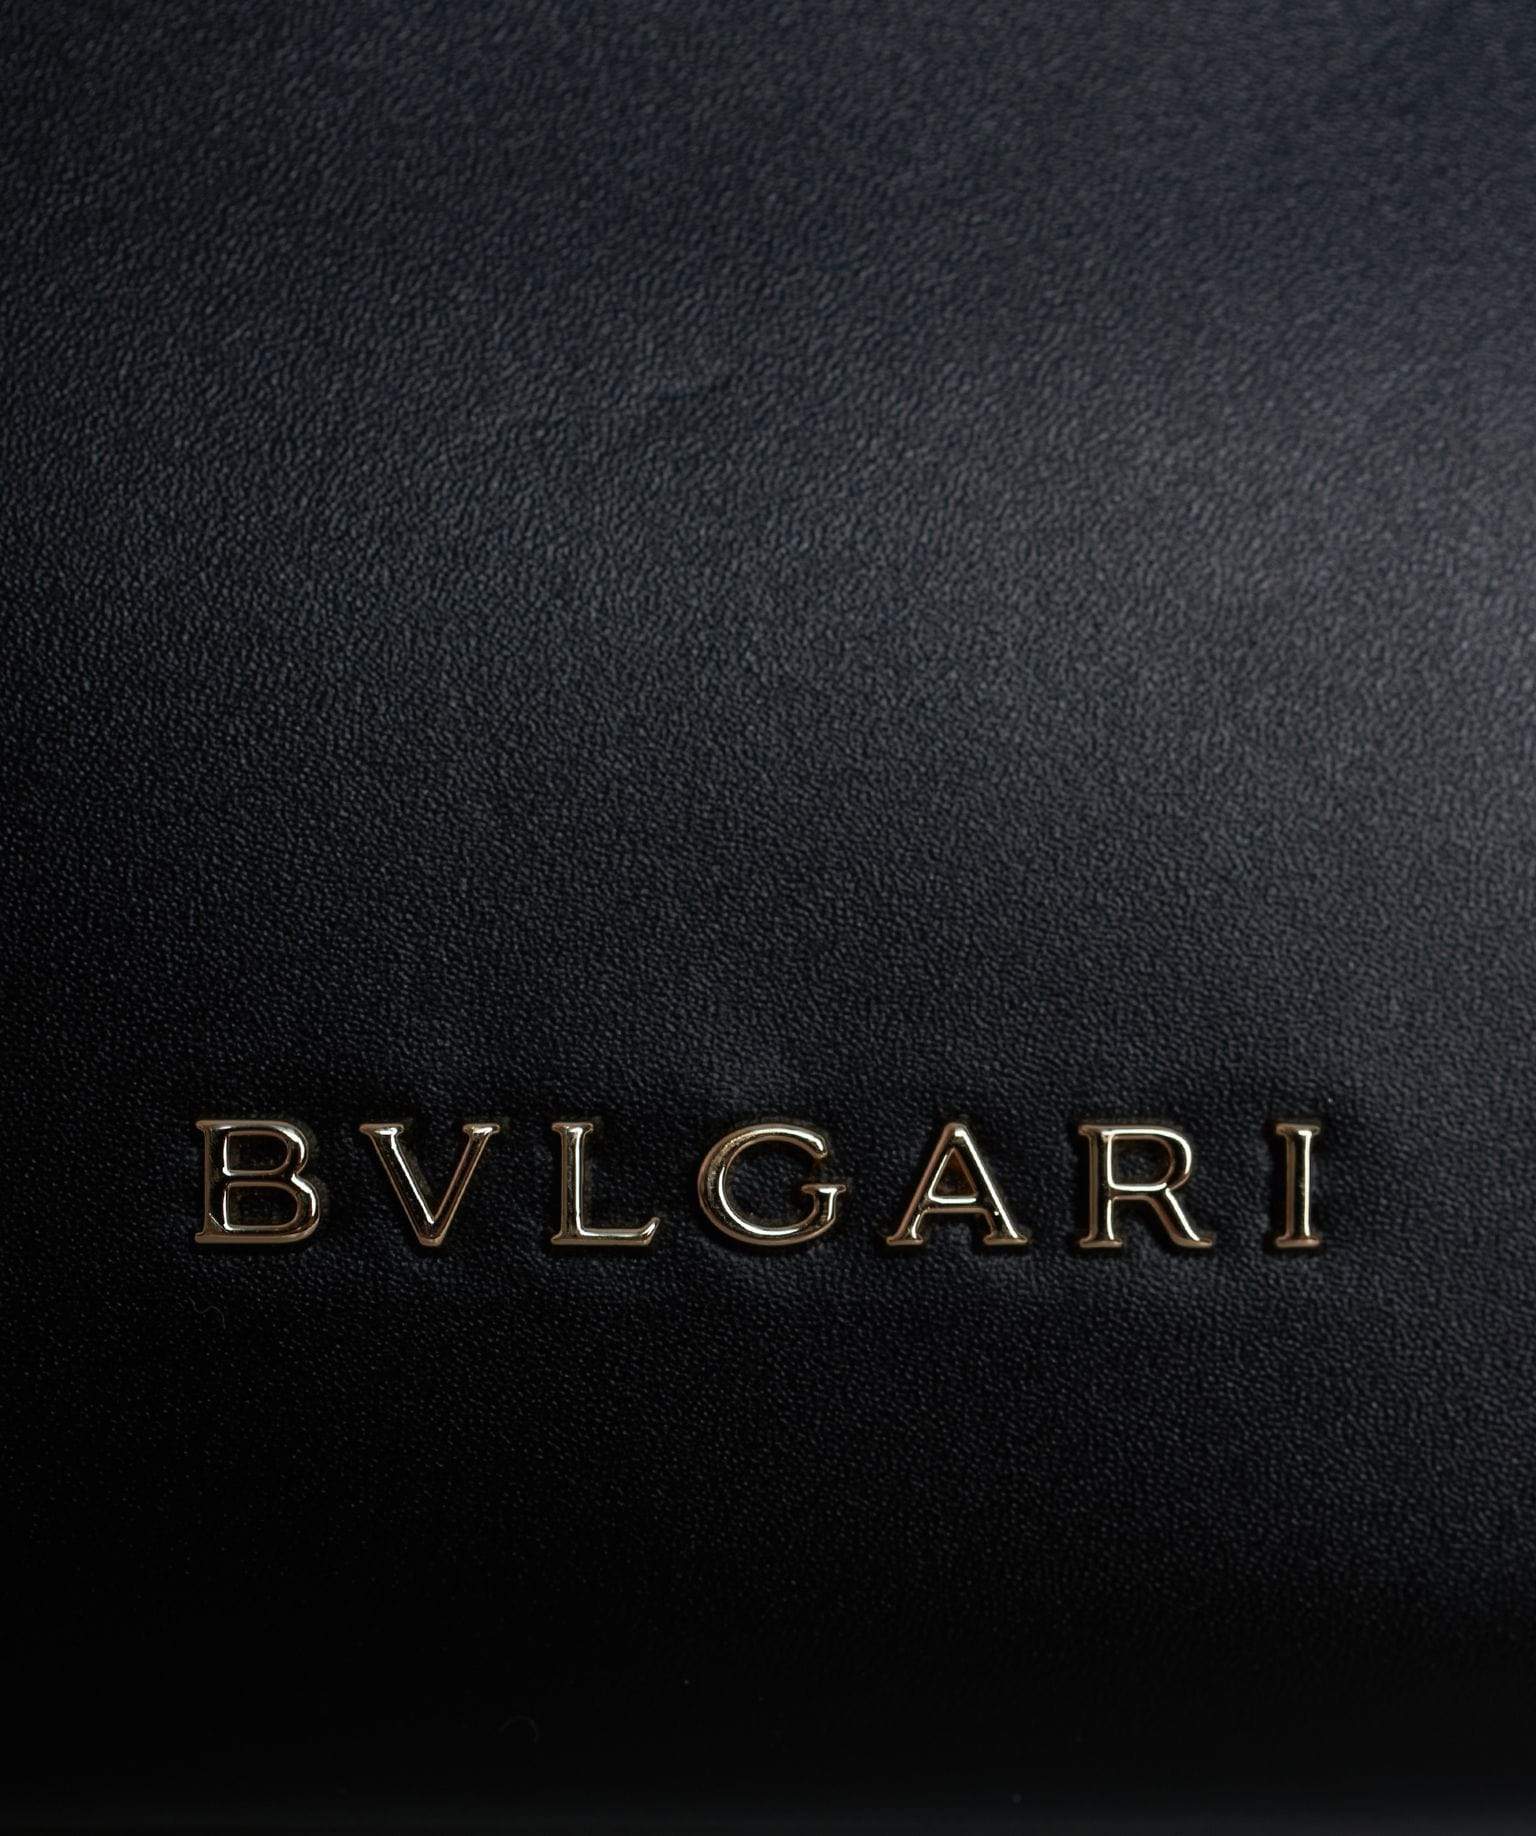 Bulgari Bulgari serpantine wallet on chain